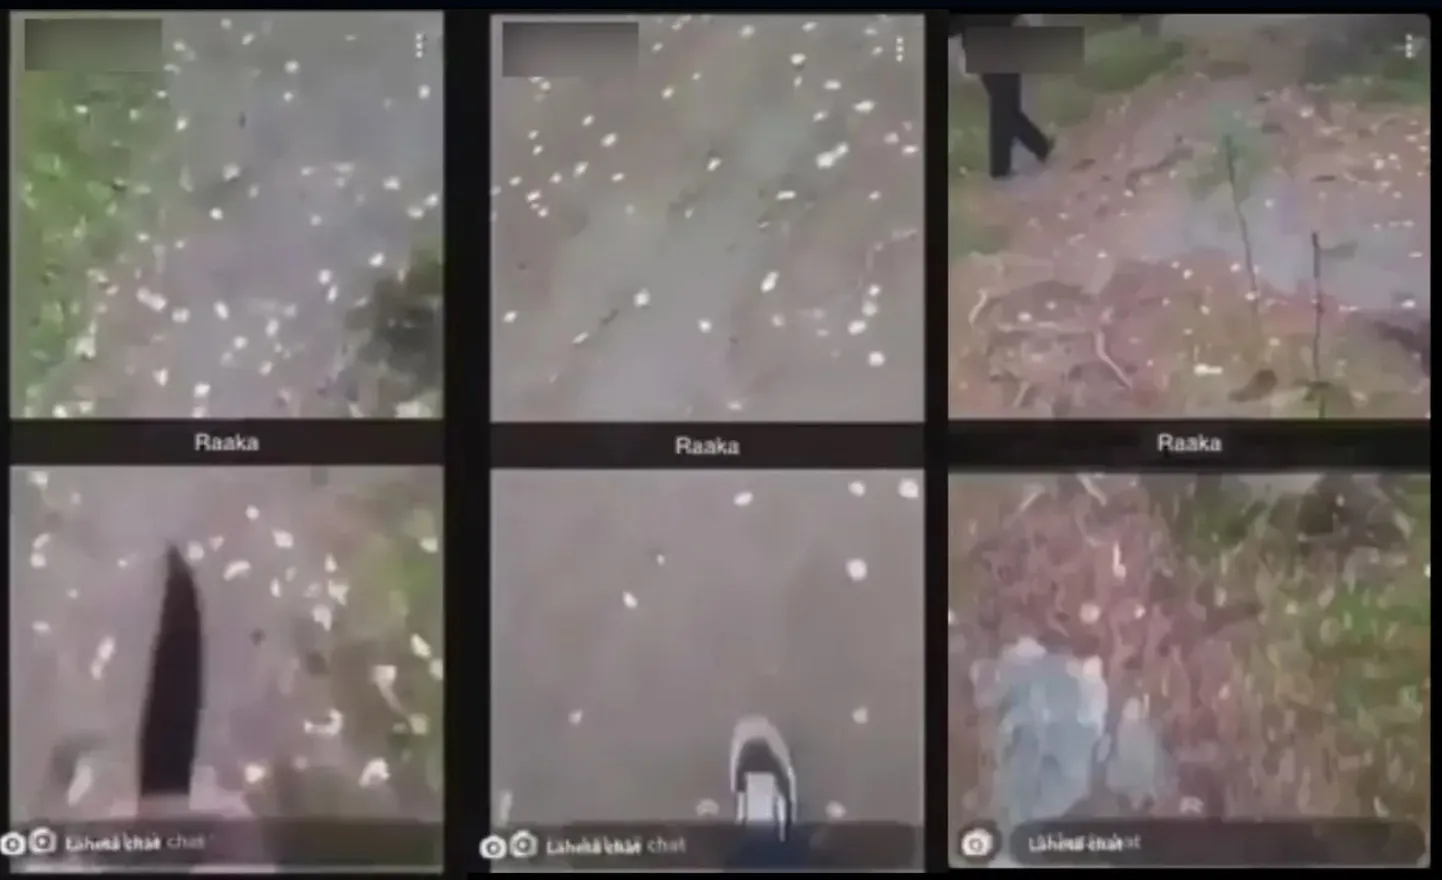 Politsei avaldas tõmmised videost, kus oli ka nuga näha.